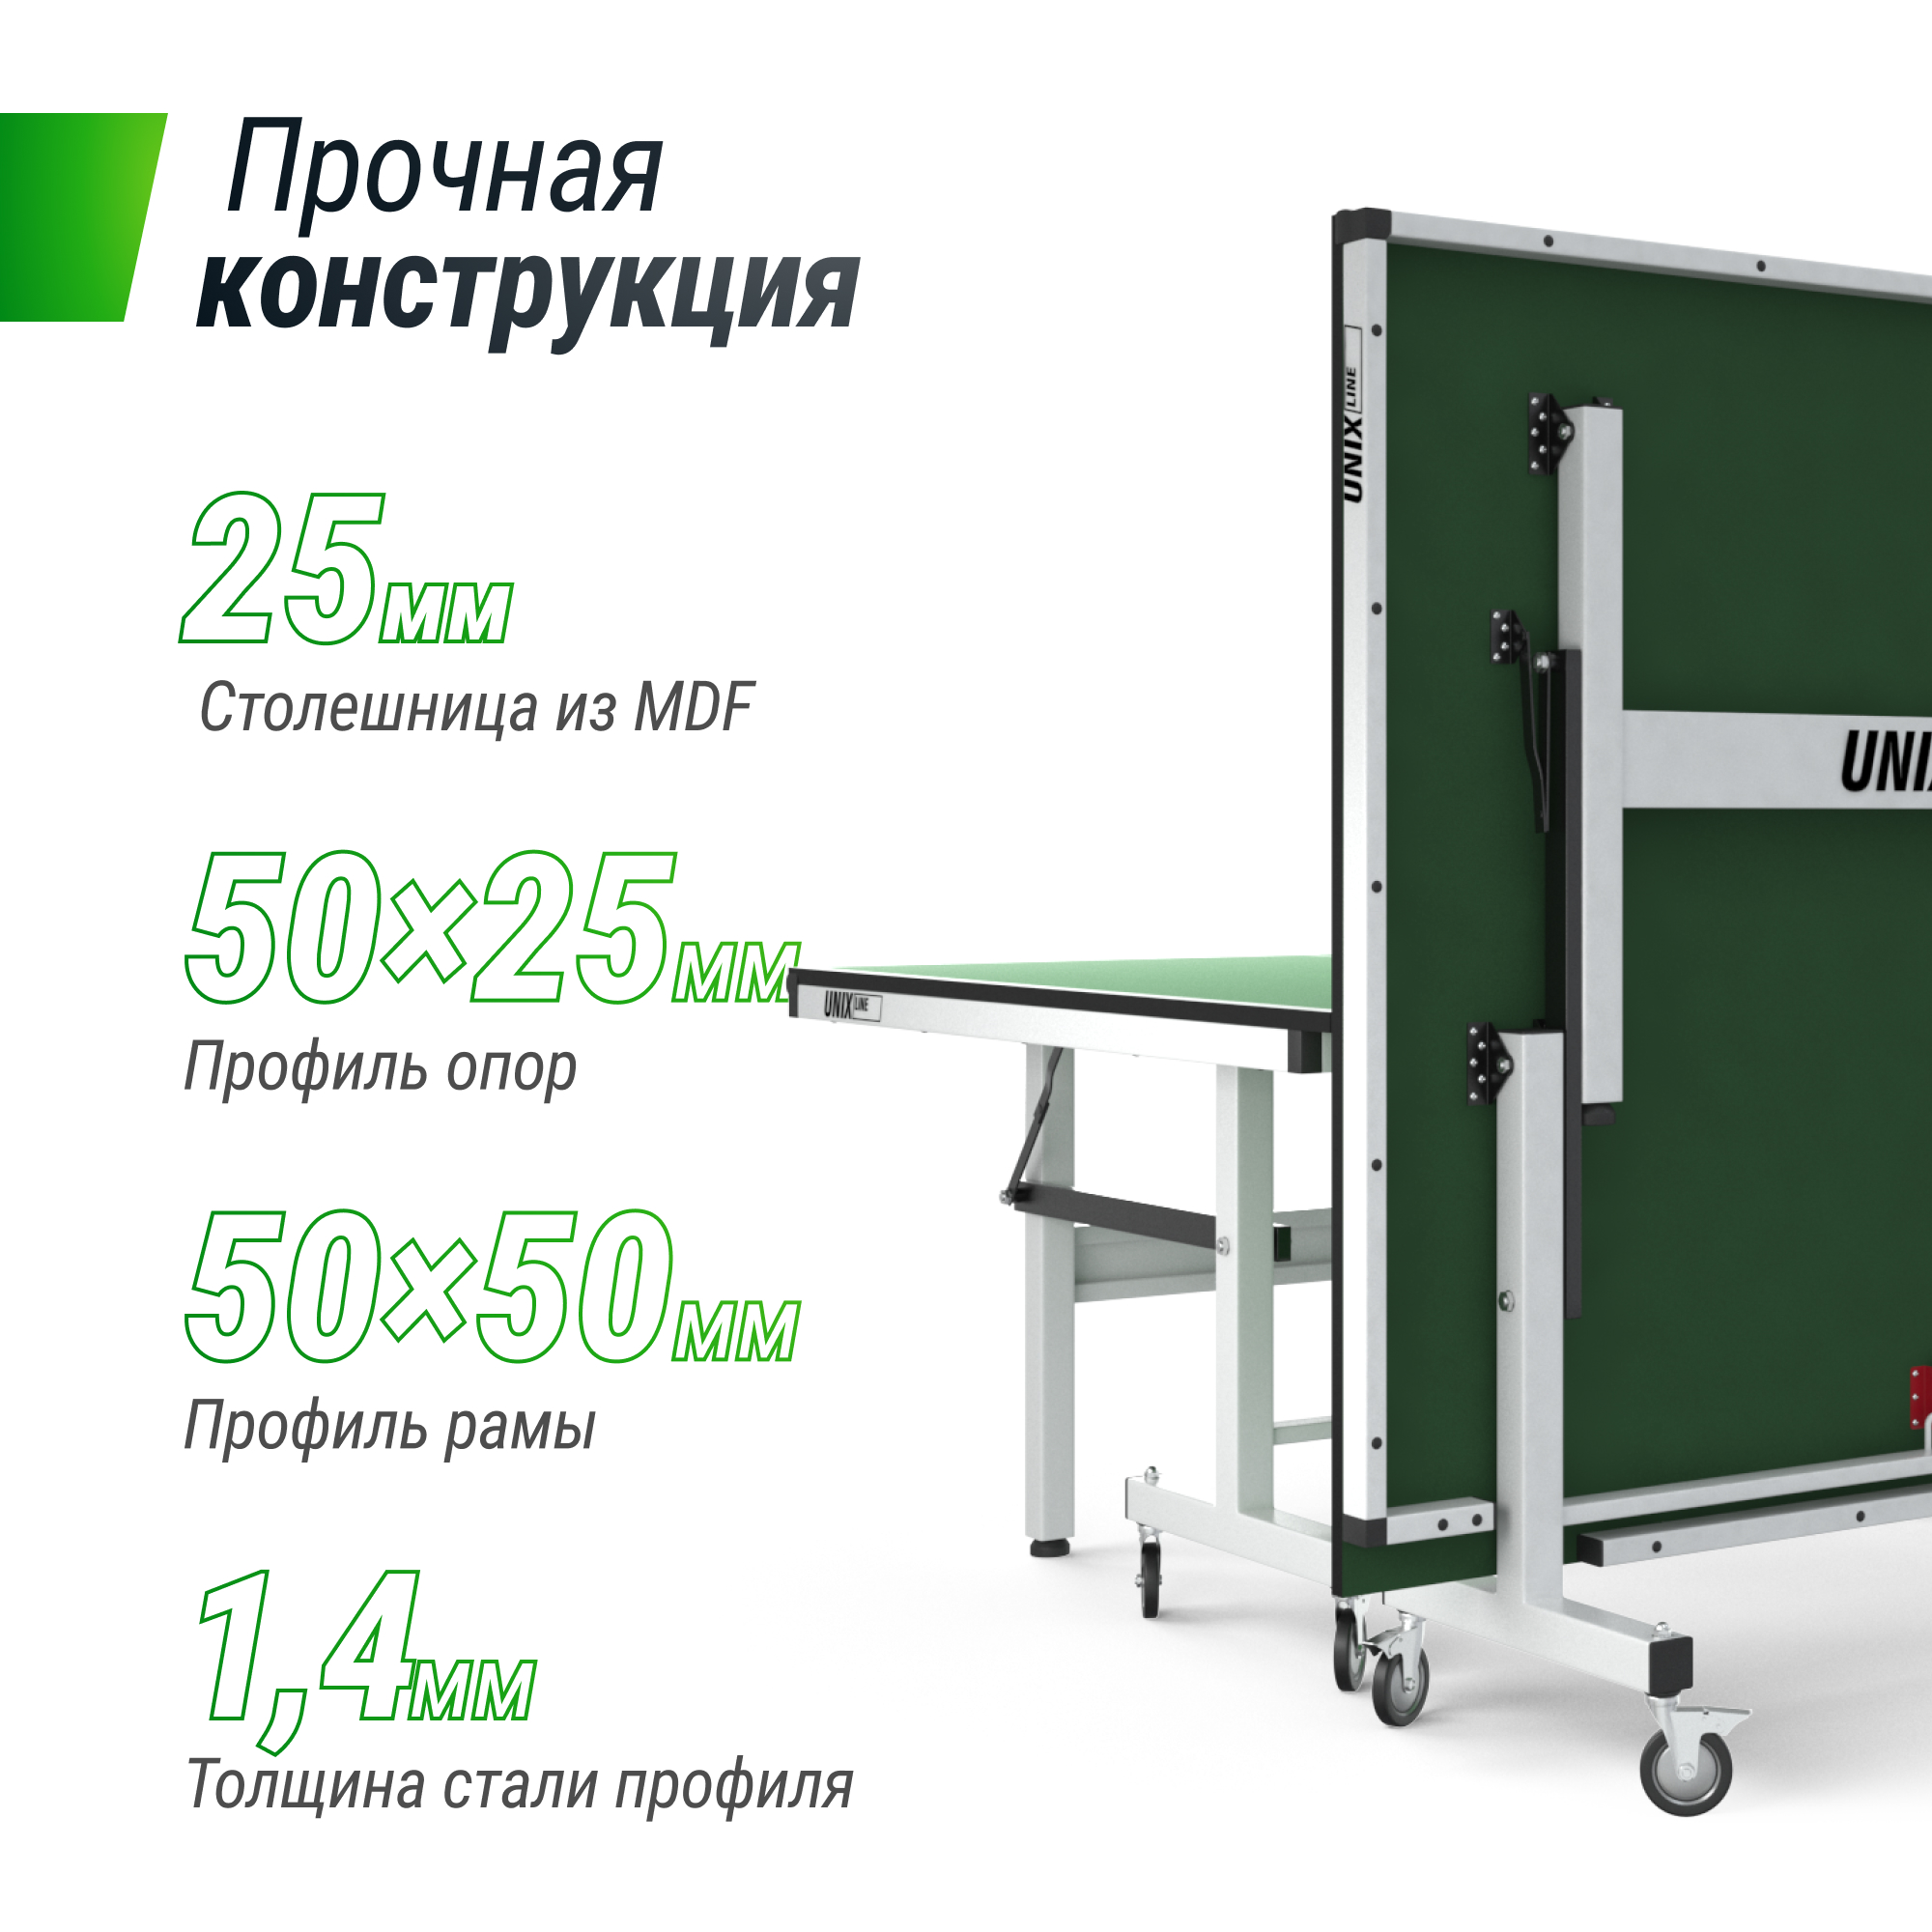 Профессиональный теннисный стол UNIX Line 25 mm MDF (Green) - 7 